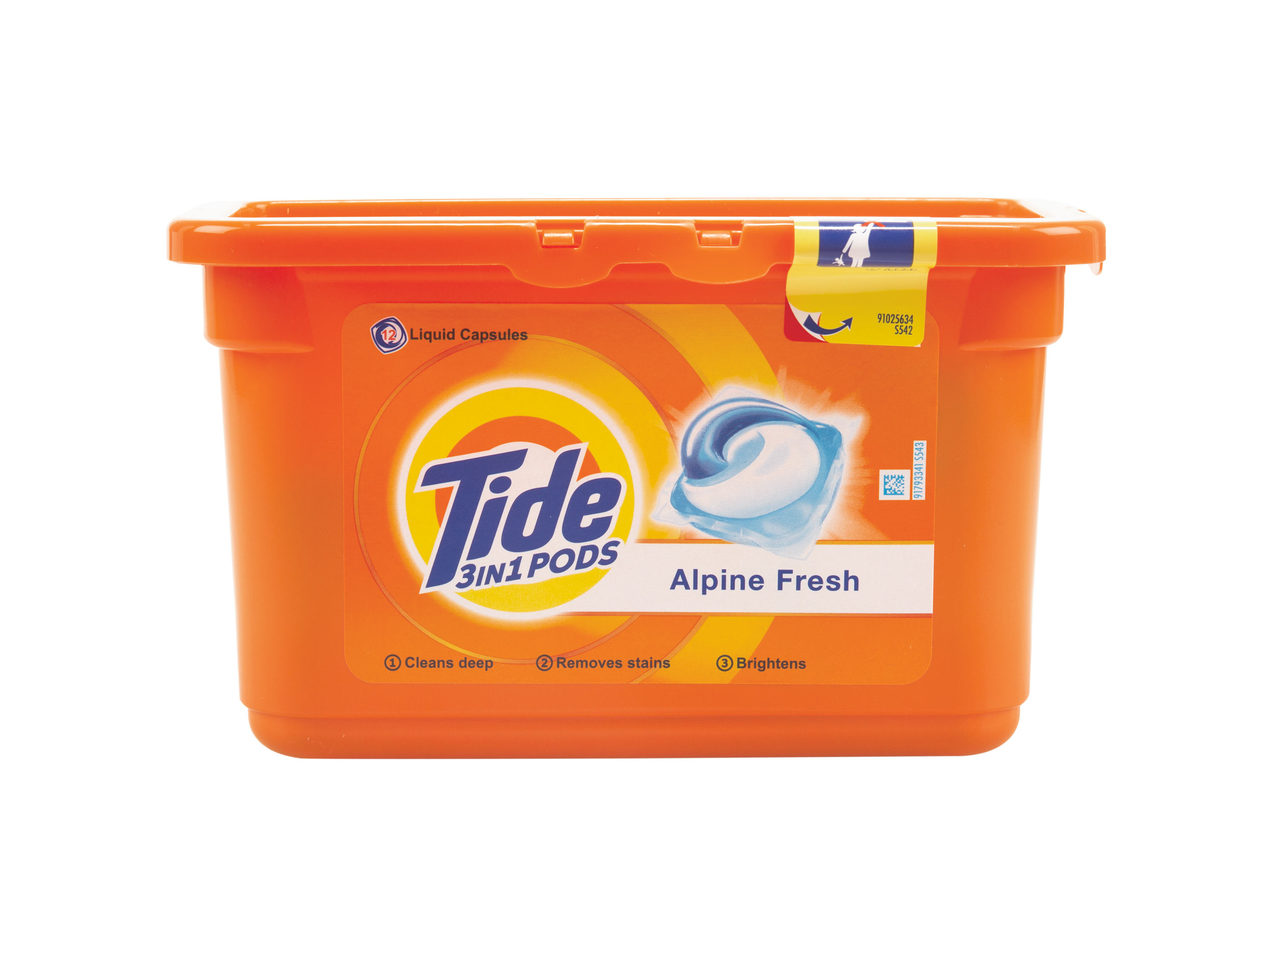 Detergent capsule